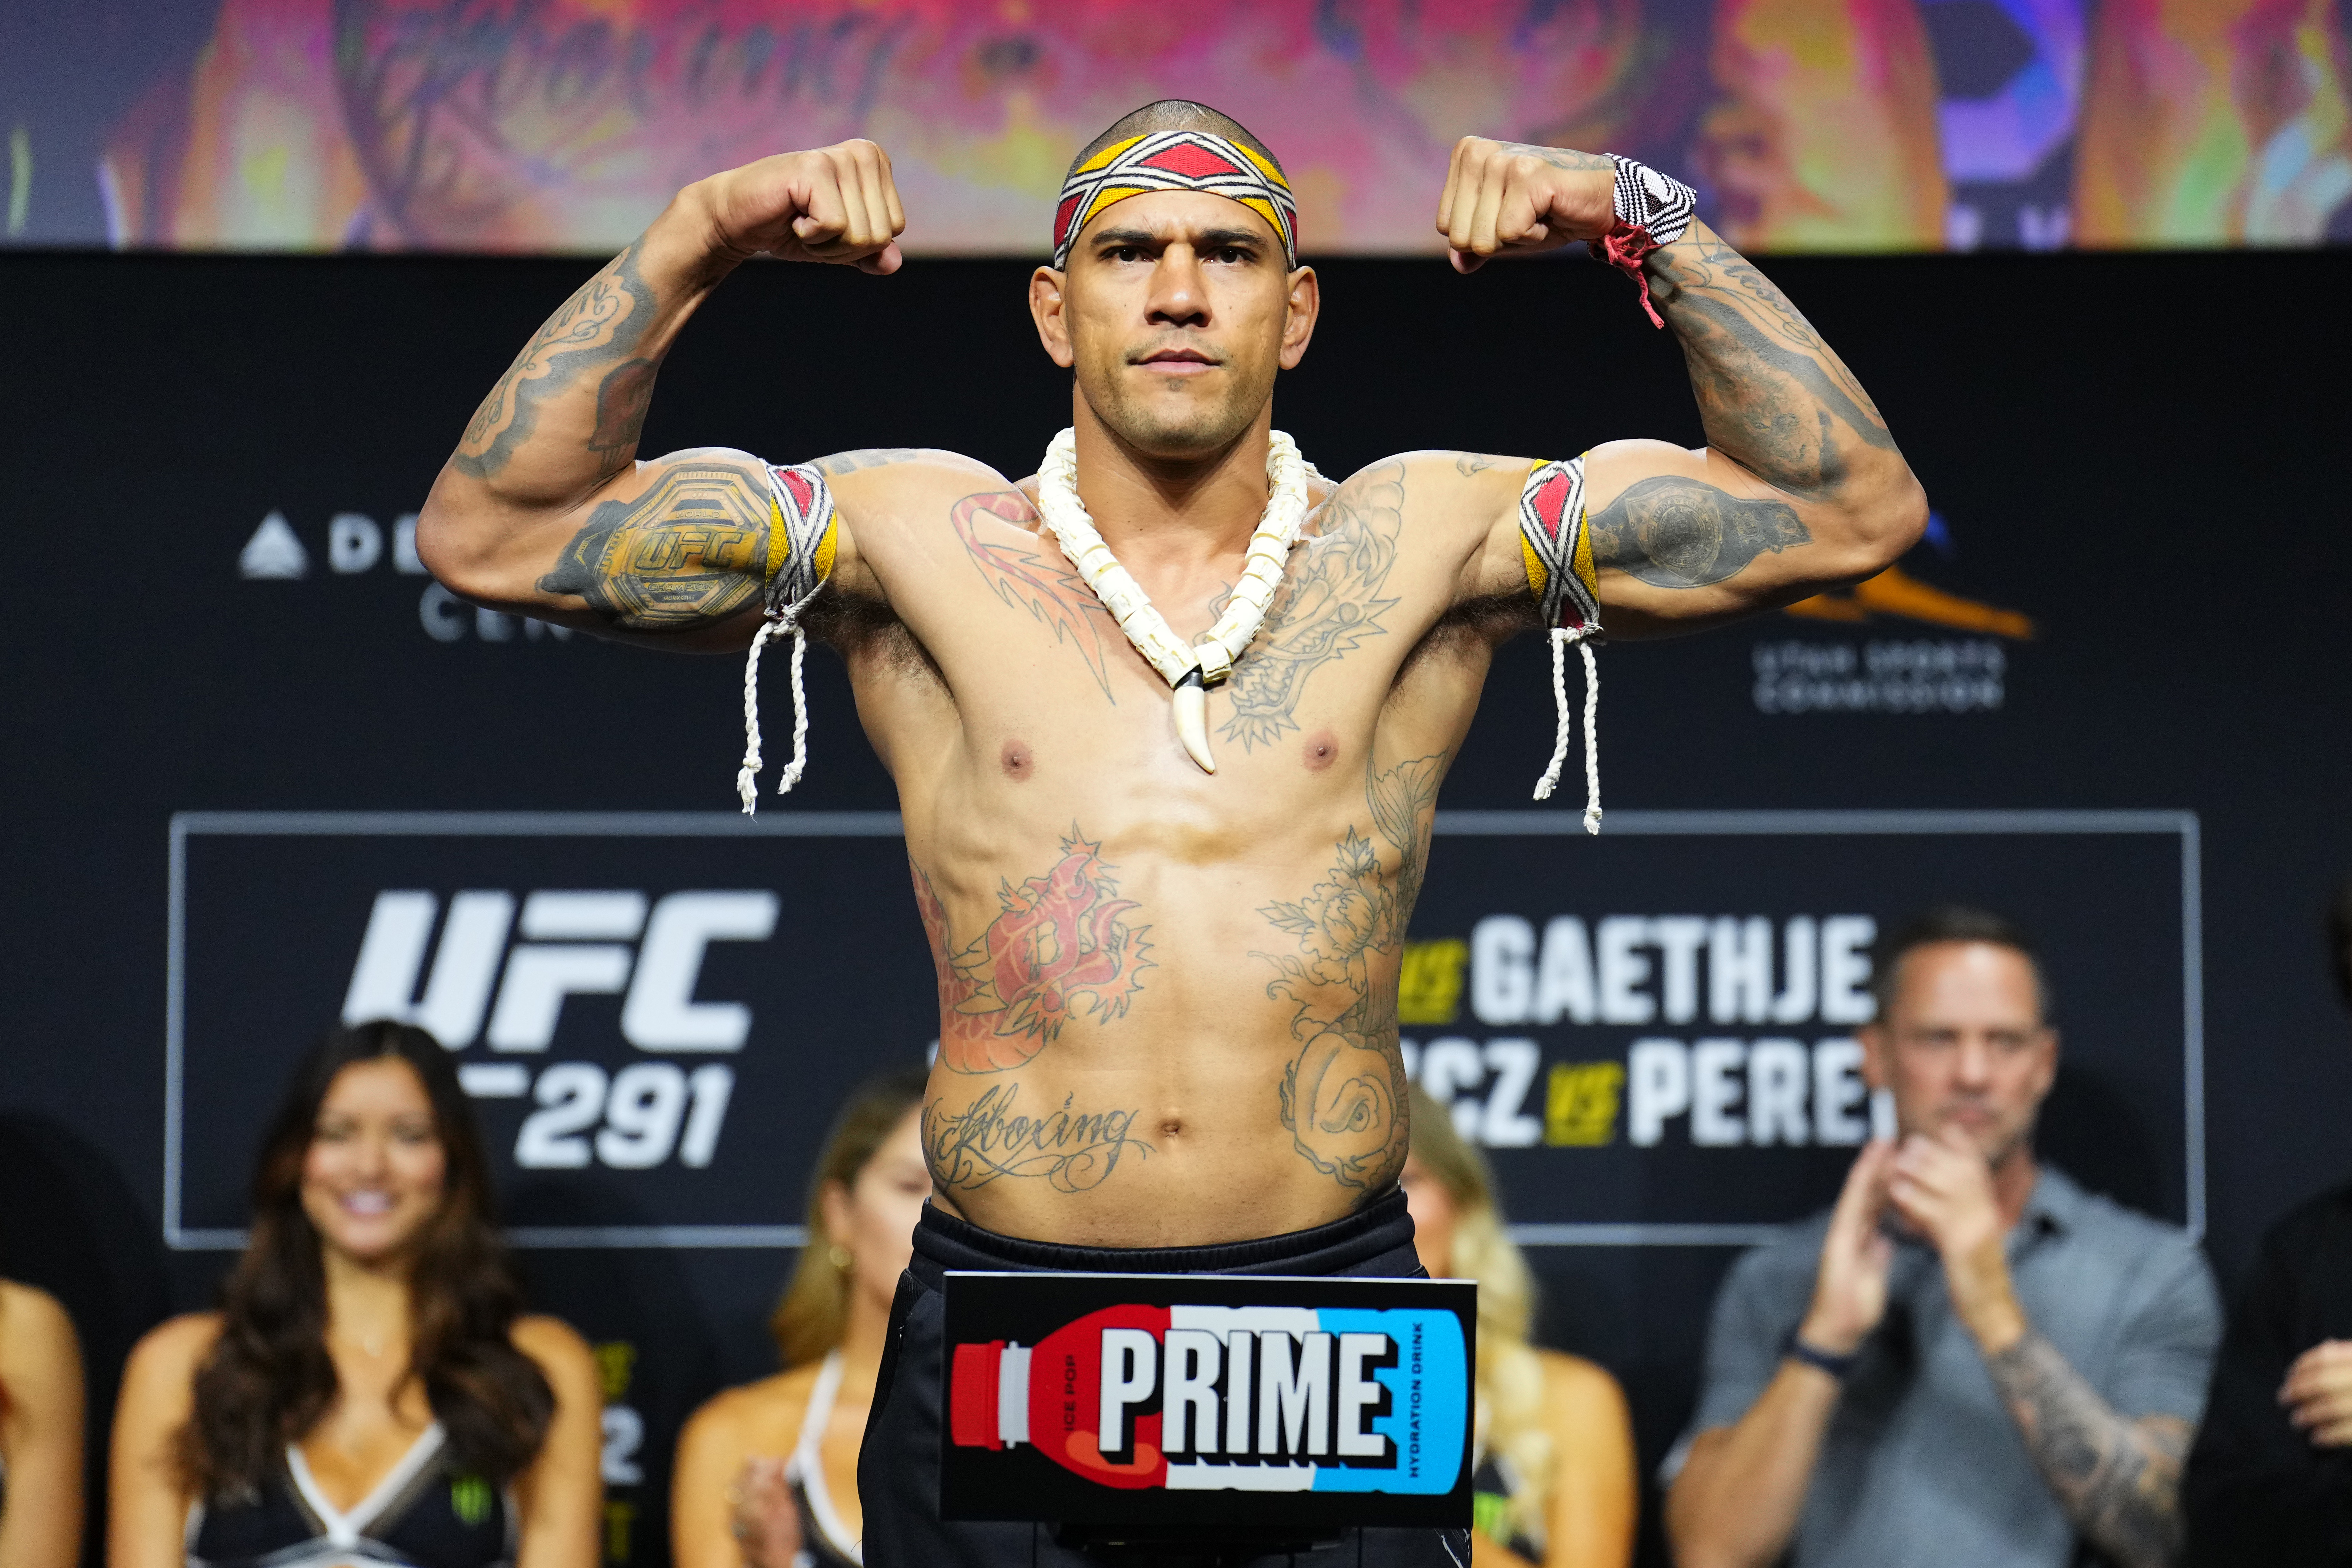 UFC 291: Ceremonial Weigh-in